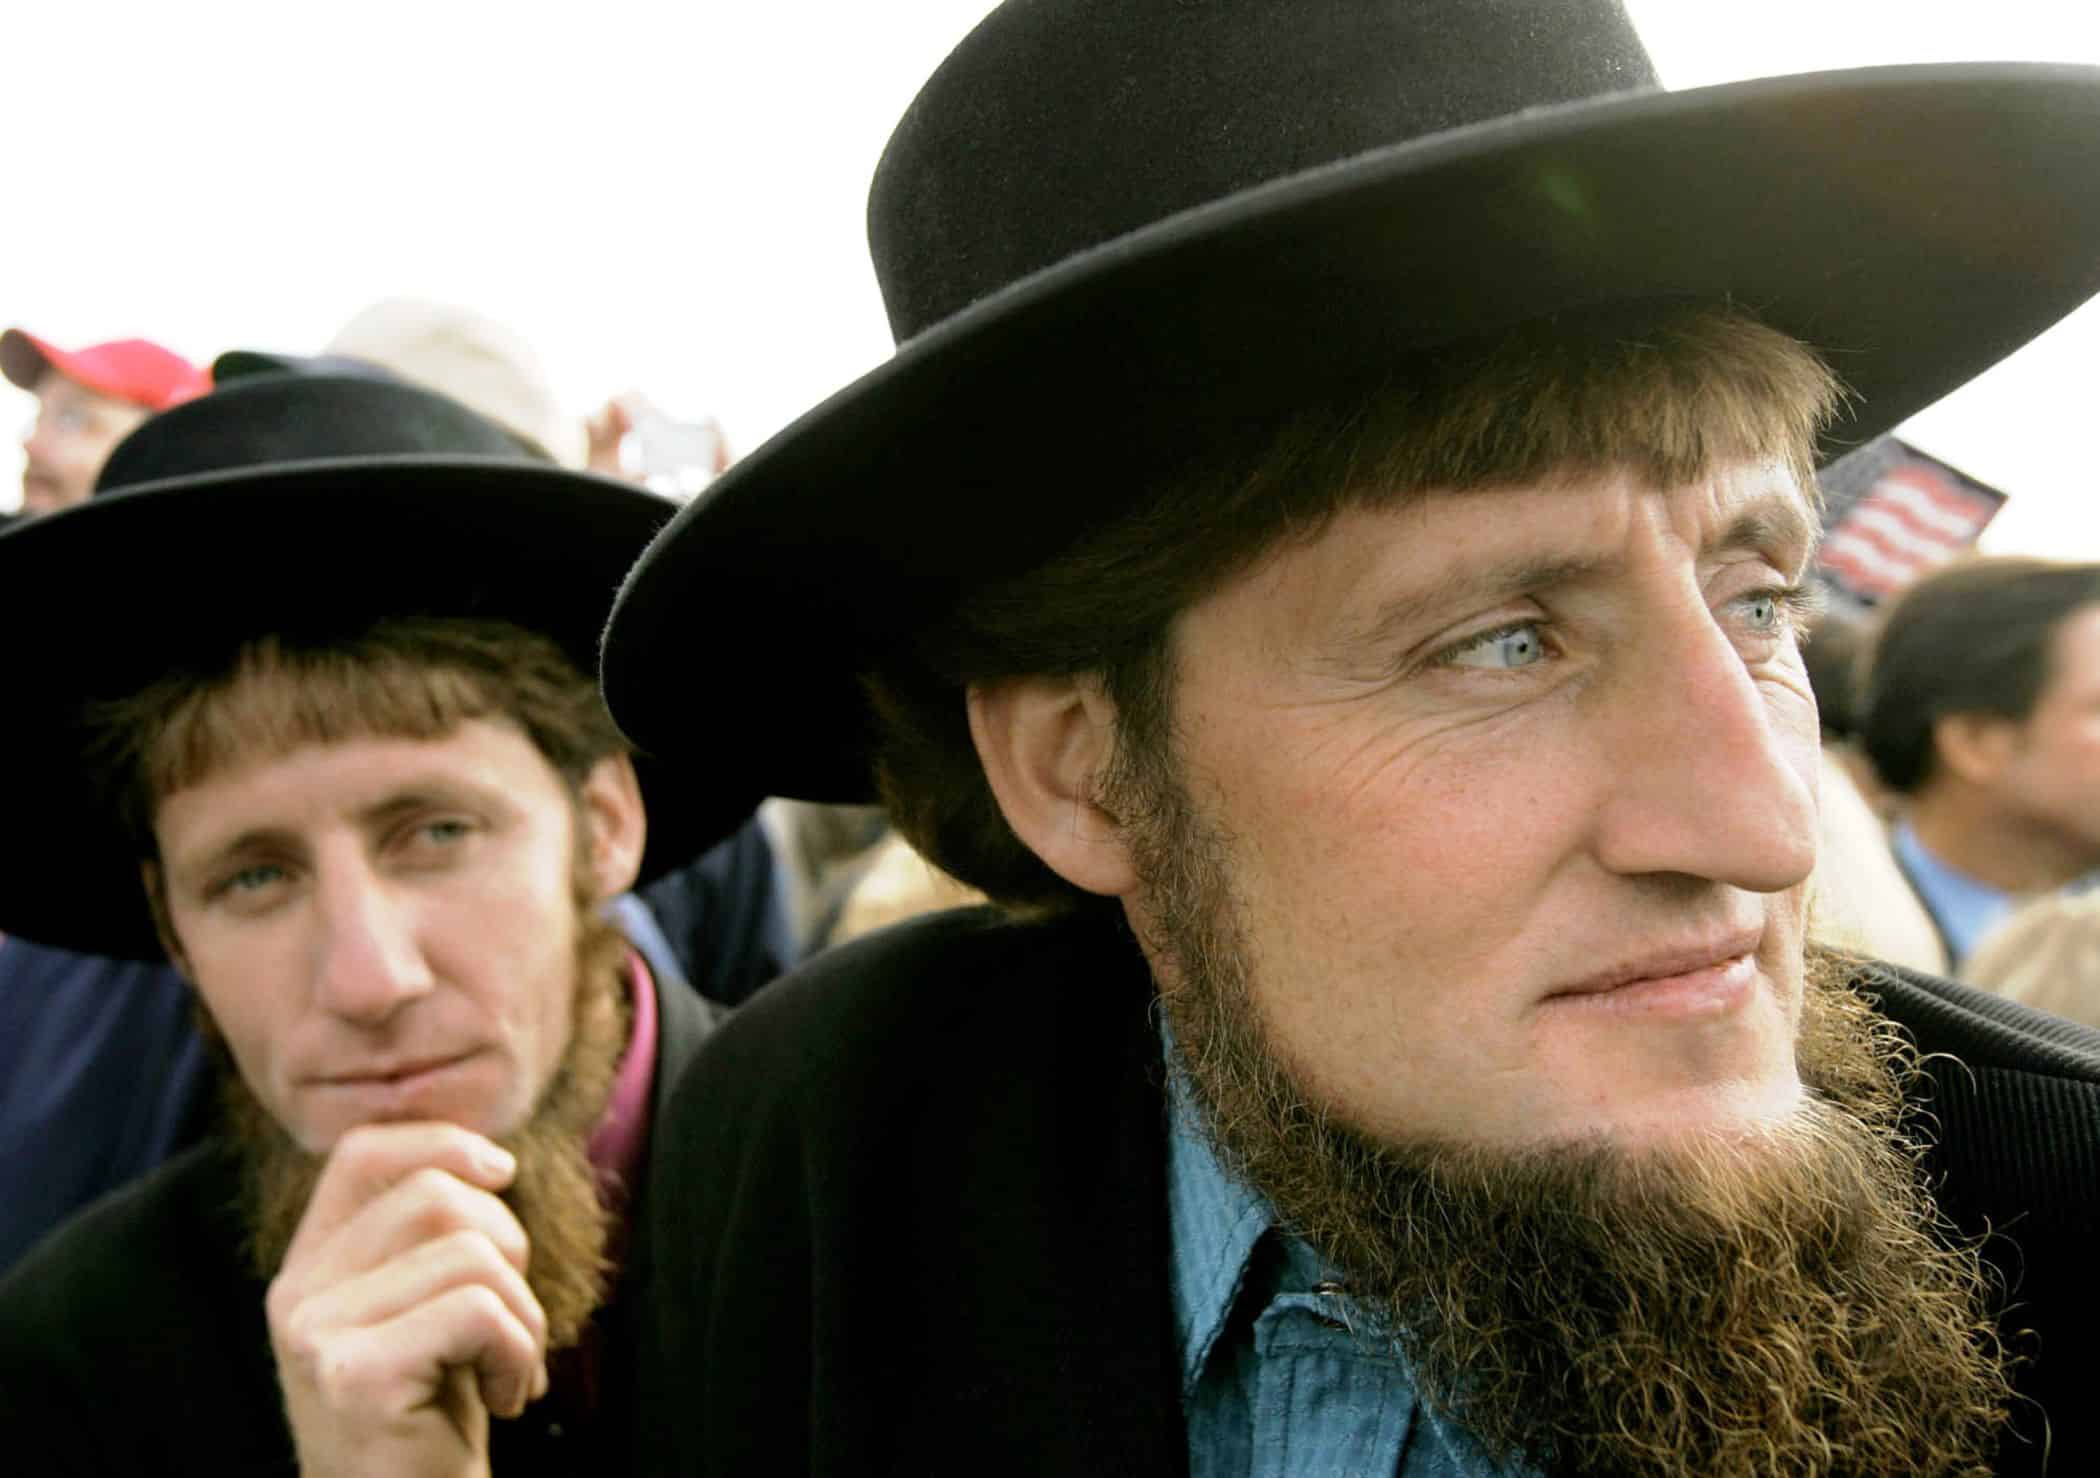  Amish: civaka balkêş ku li Dewletên Yekbûyî û Kanada dijî